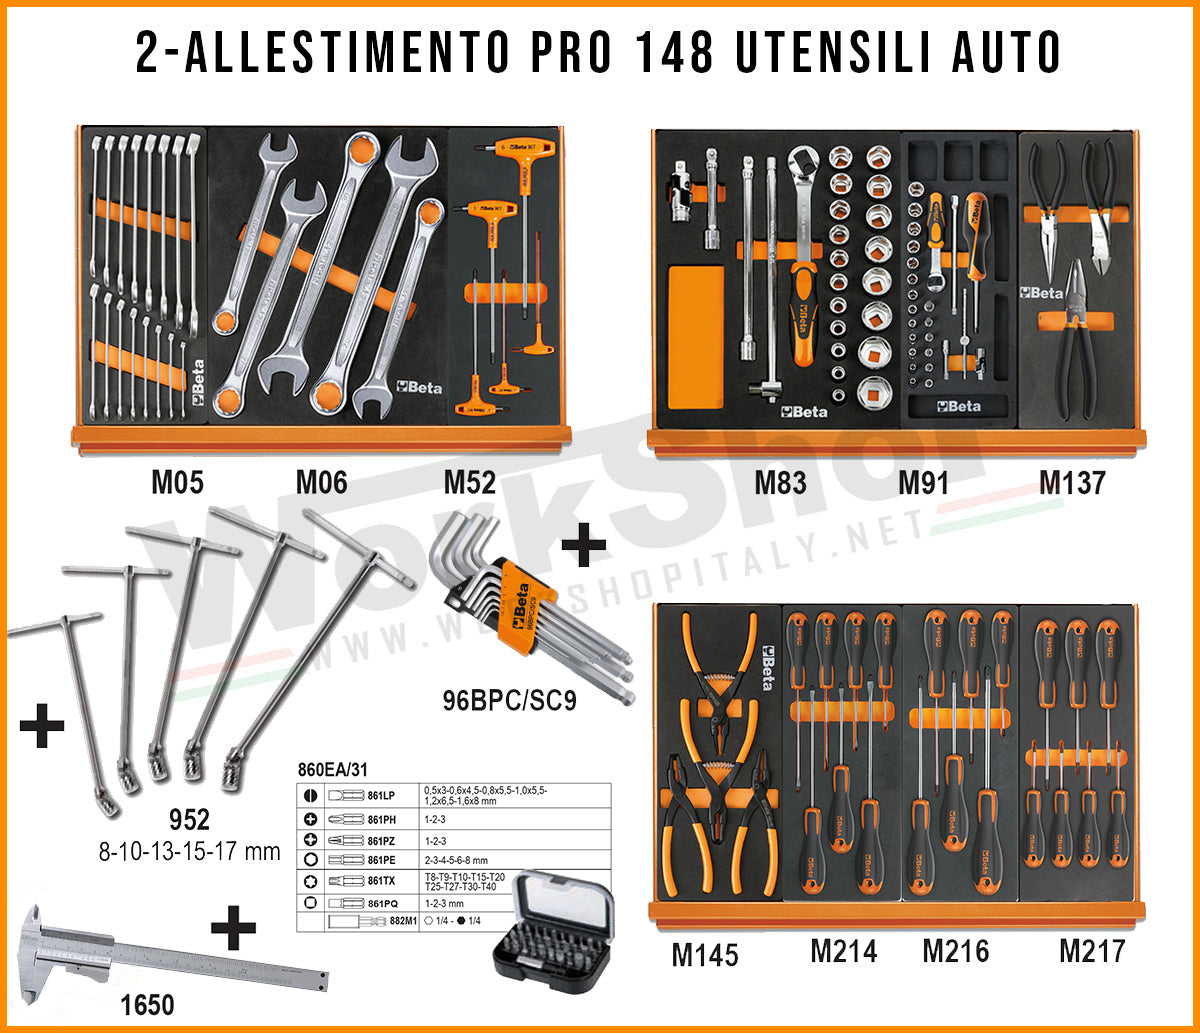 Promozione carrelli Beta RSC24 + Allestimenti , crea la tua combinazione ideale!